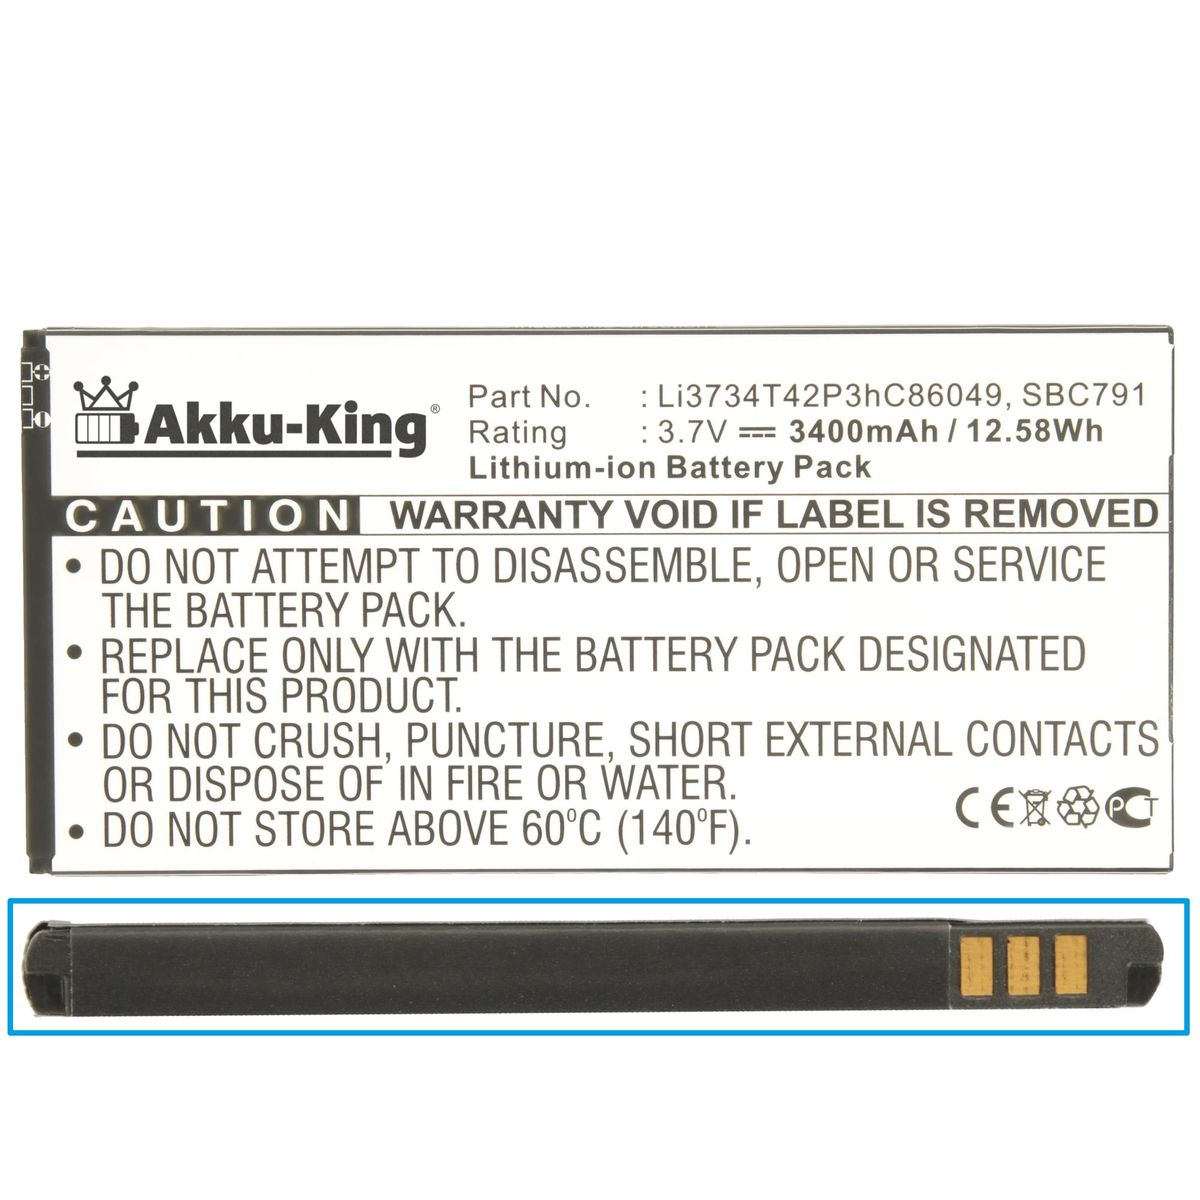 MTC Handy-Akku, Li-Ion AKKU-KING Li3734T42P3hC86049 kompatibel Volt, Akku 3400mAh 3.7 mit